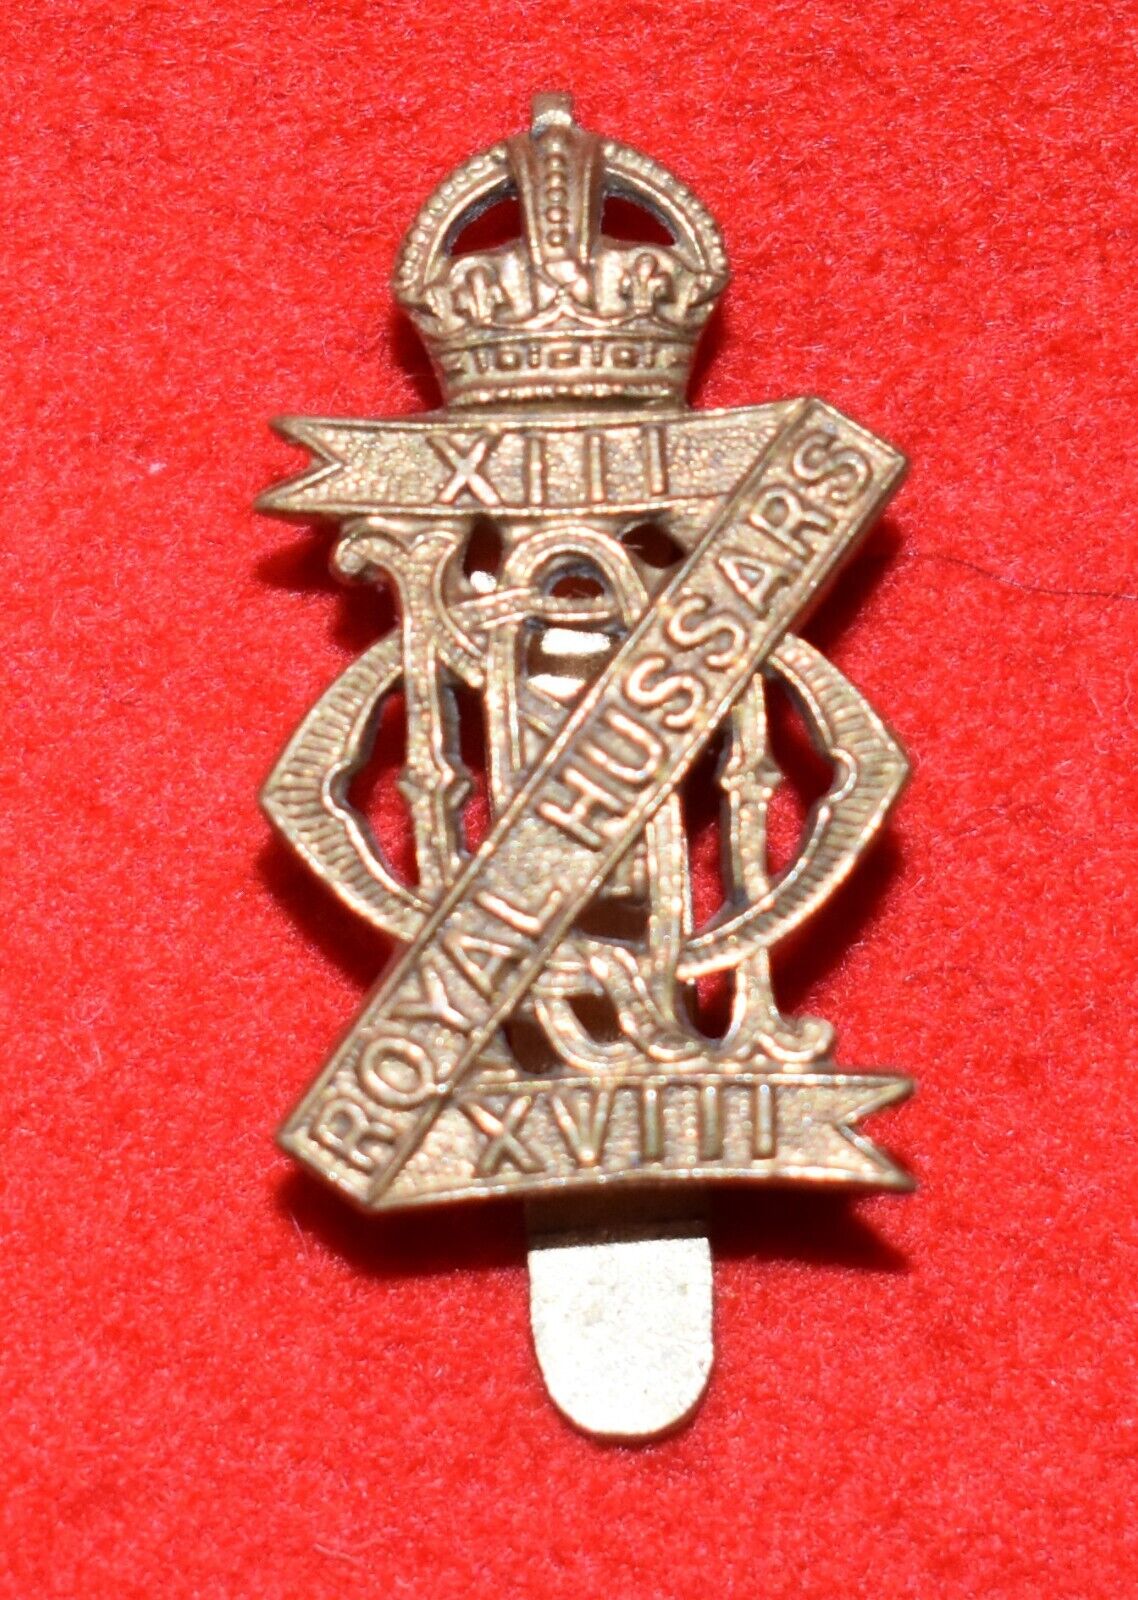 British Army. 13/18th Royal Hussars Genuine OR’s Cap Badge